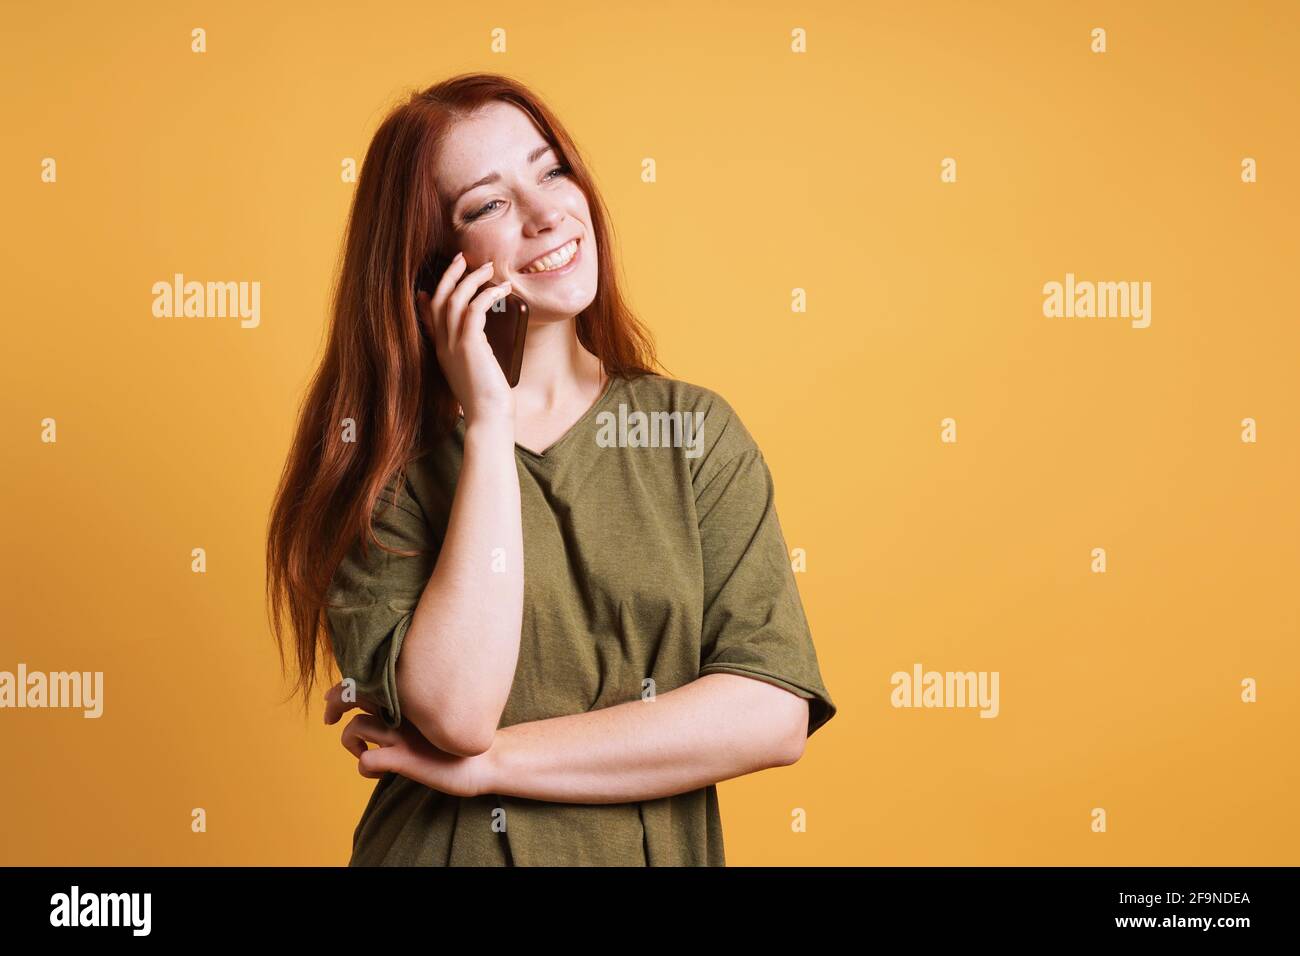 Fröhlich lachende junge Frau, die auf dem Smartphone oder Handy spricht Telefon Stockfoto